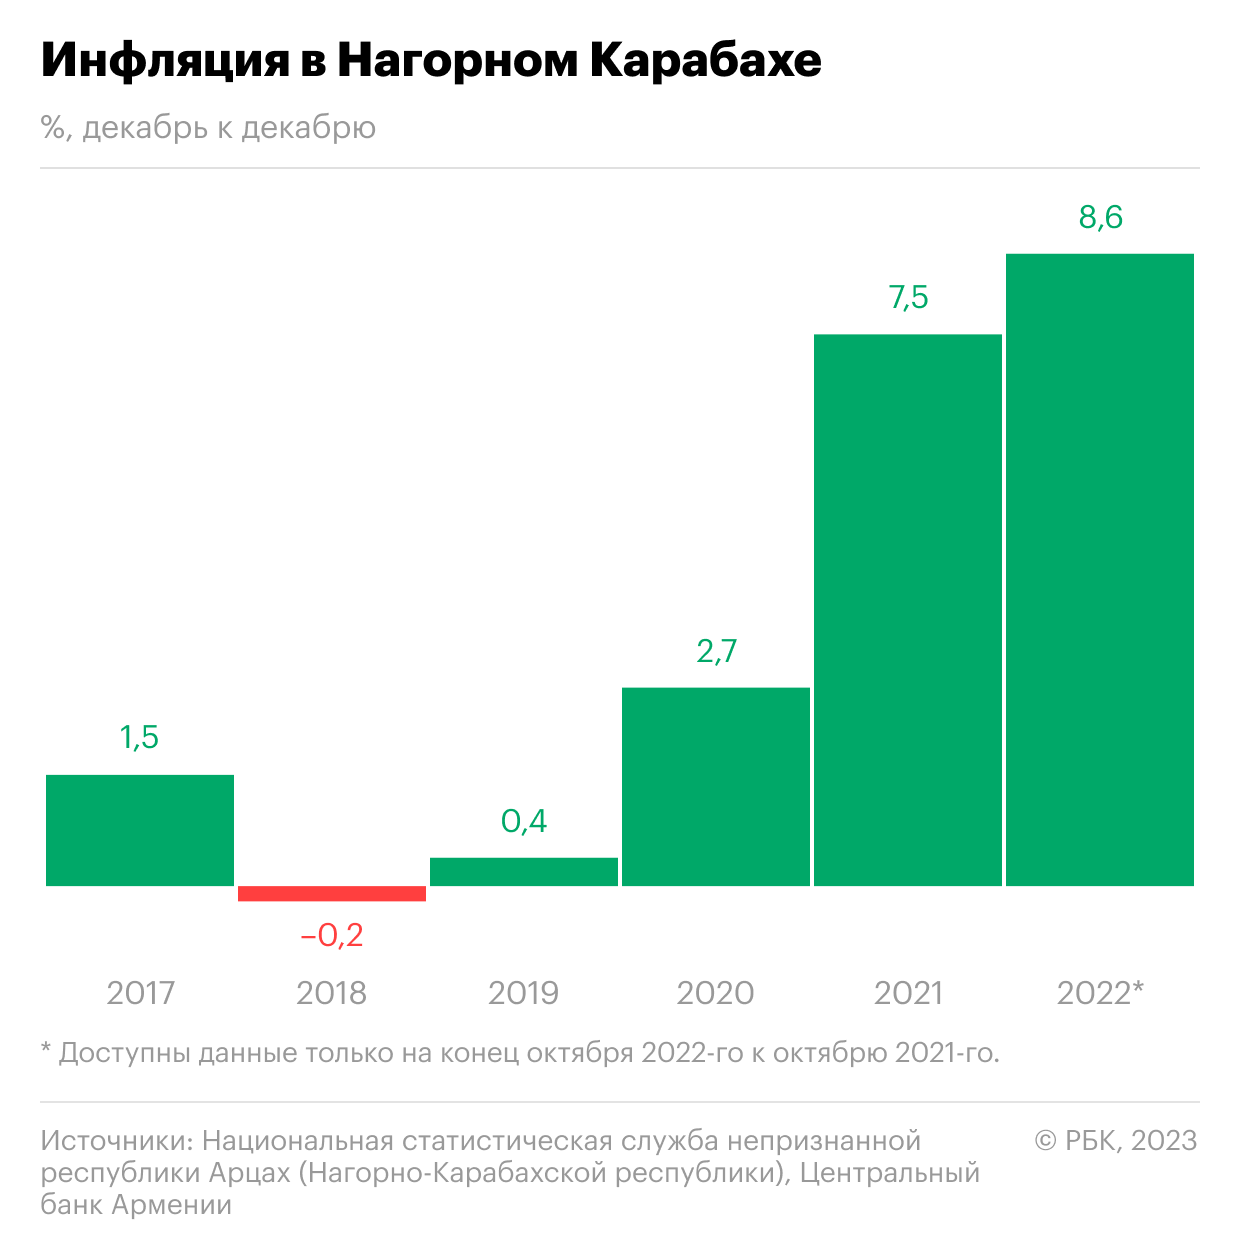 Как соотносятся экономики Нагорного Карабаха и Азербайджана